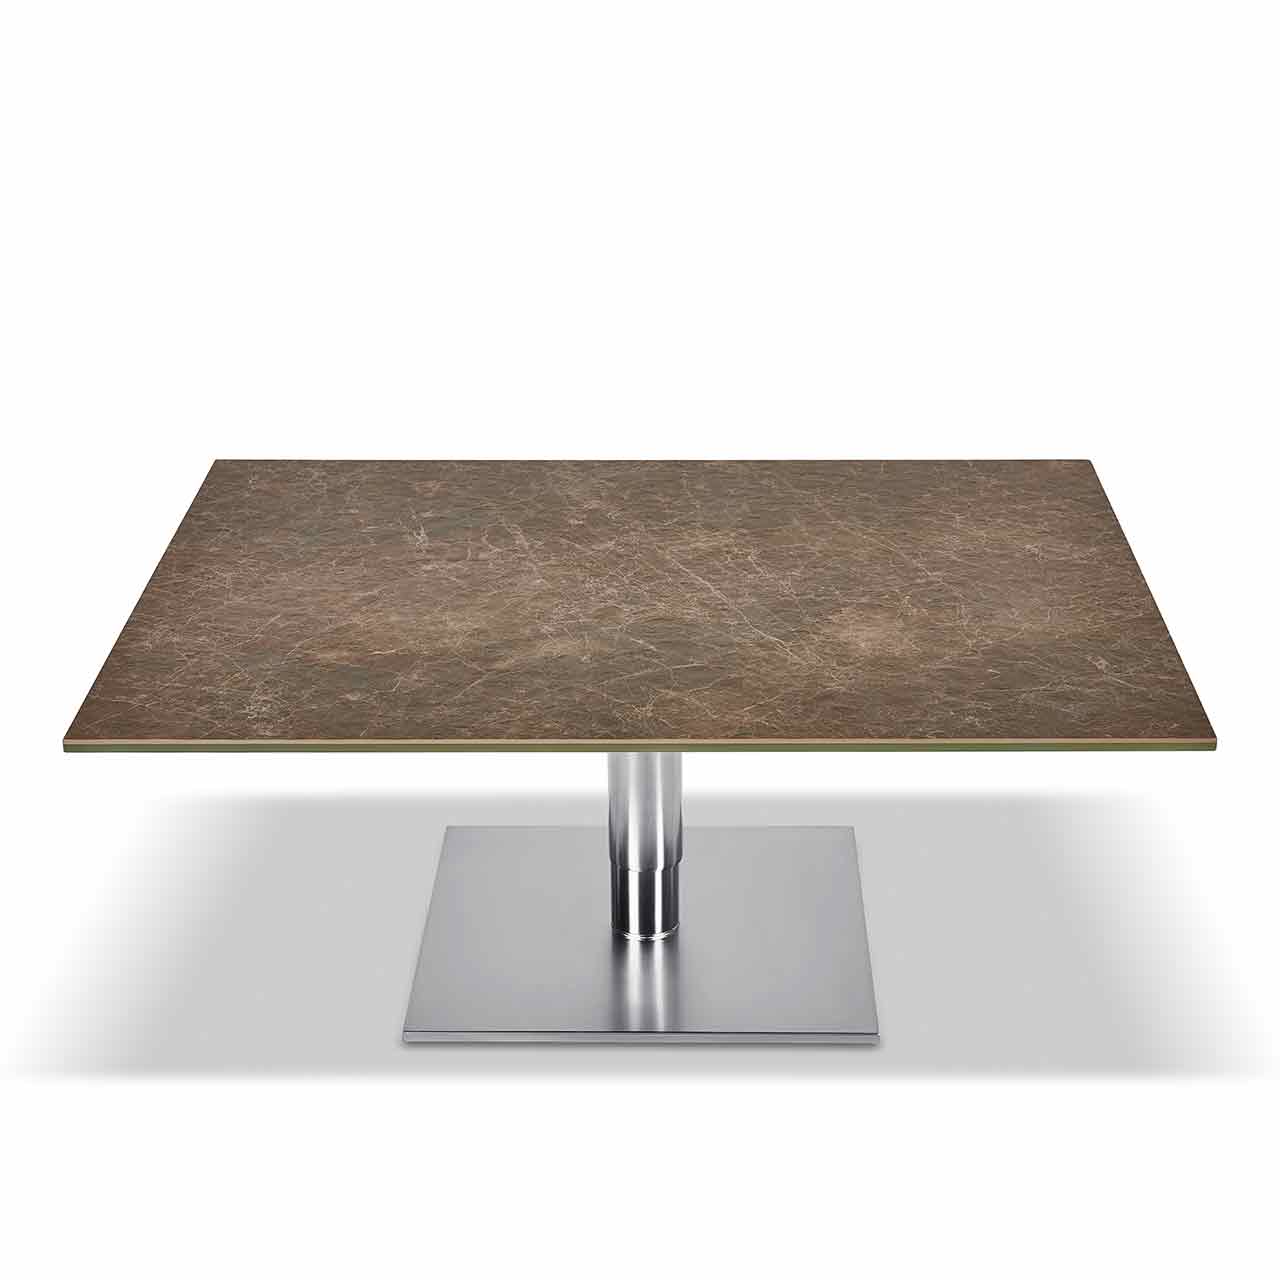 Ronald Schmitt – Couchtisch Sokrates K 570 | Tischplatte Keramik Marmor dunkel, Sockel Edelstahl geschliffen, unten